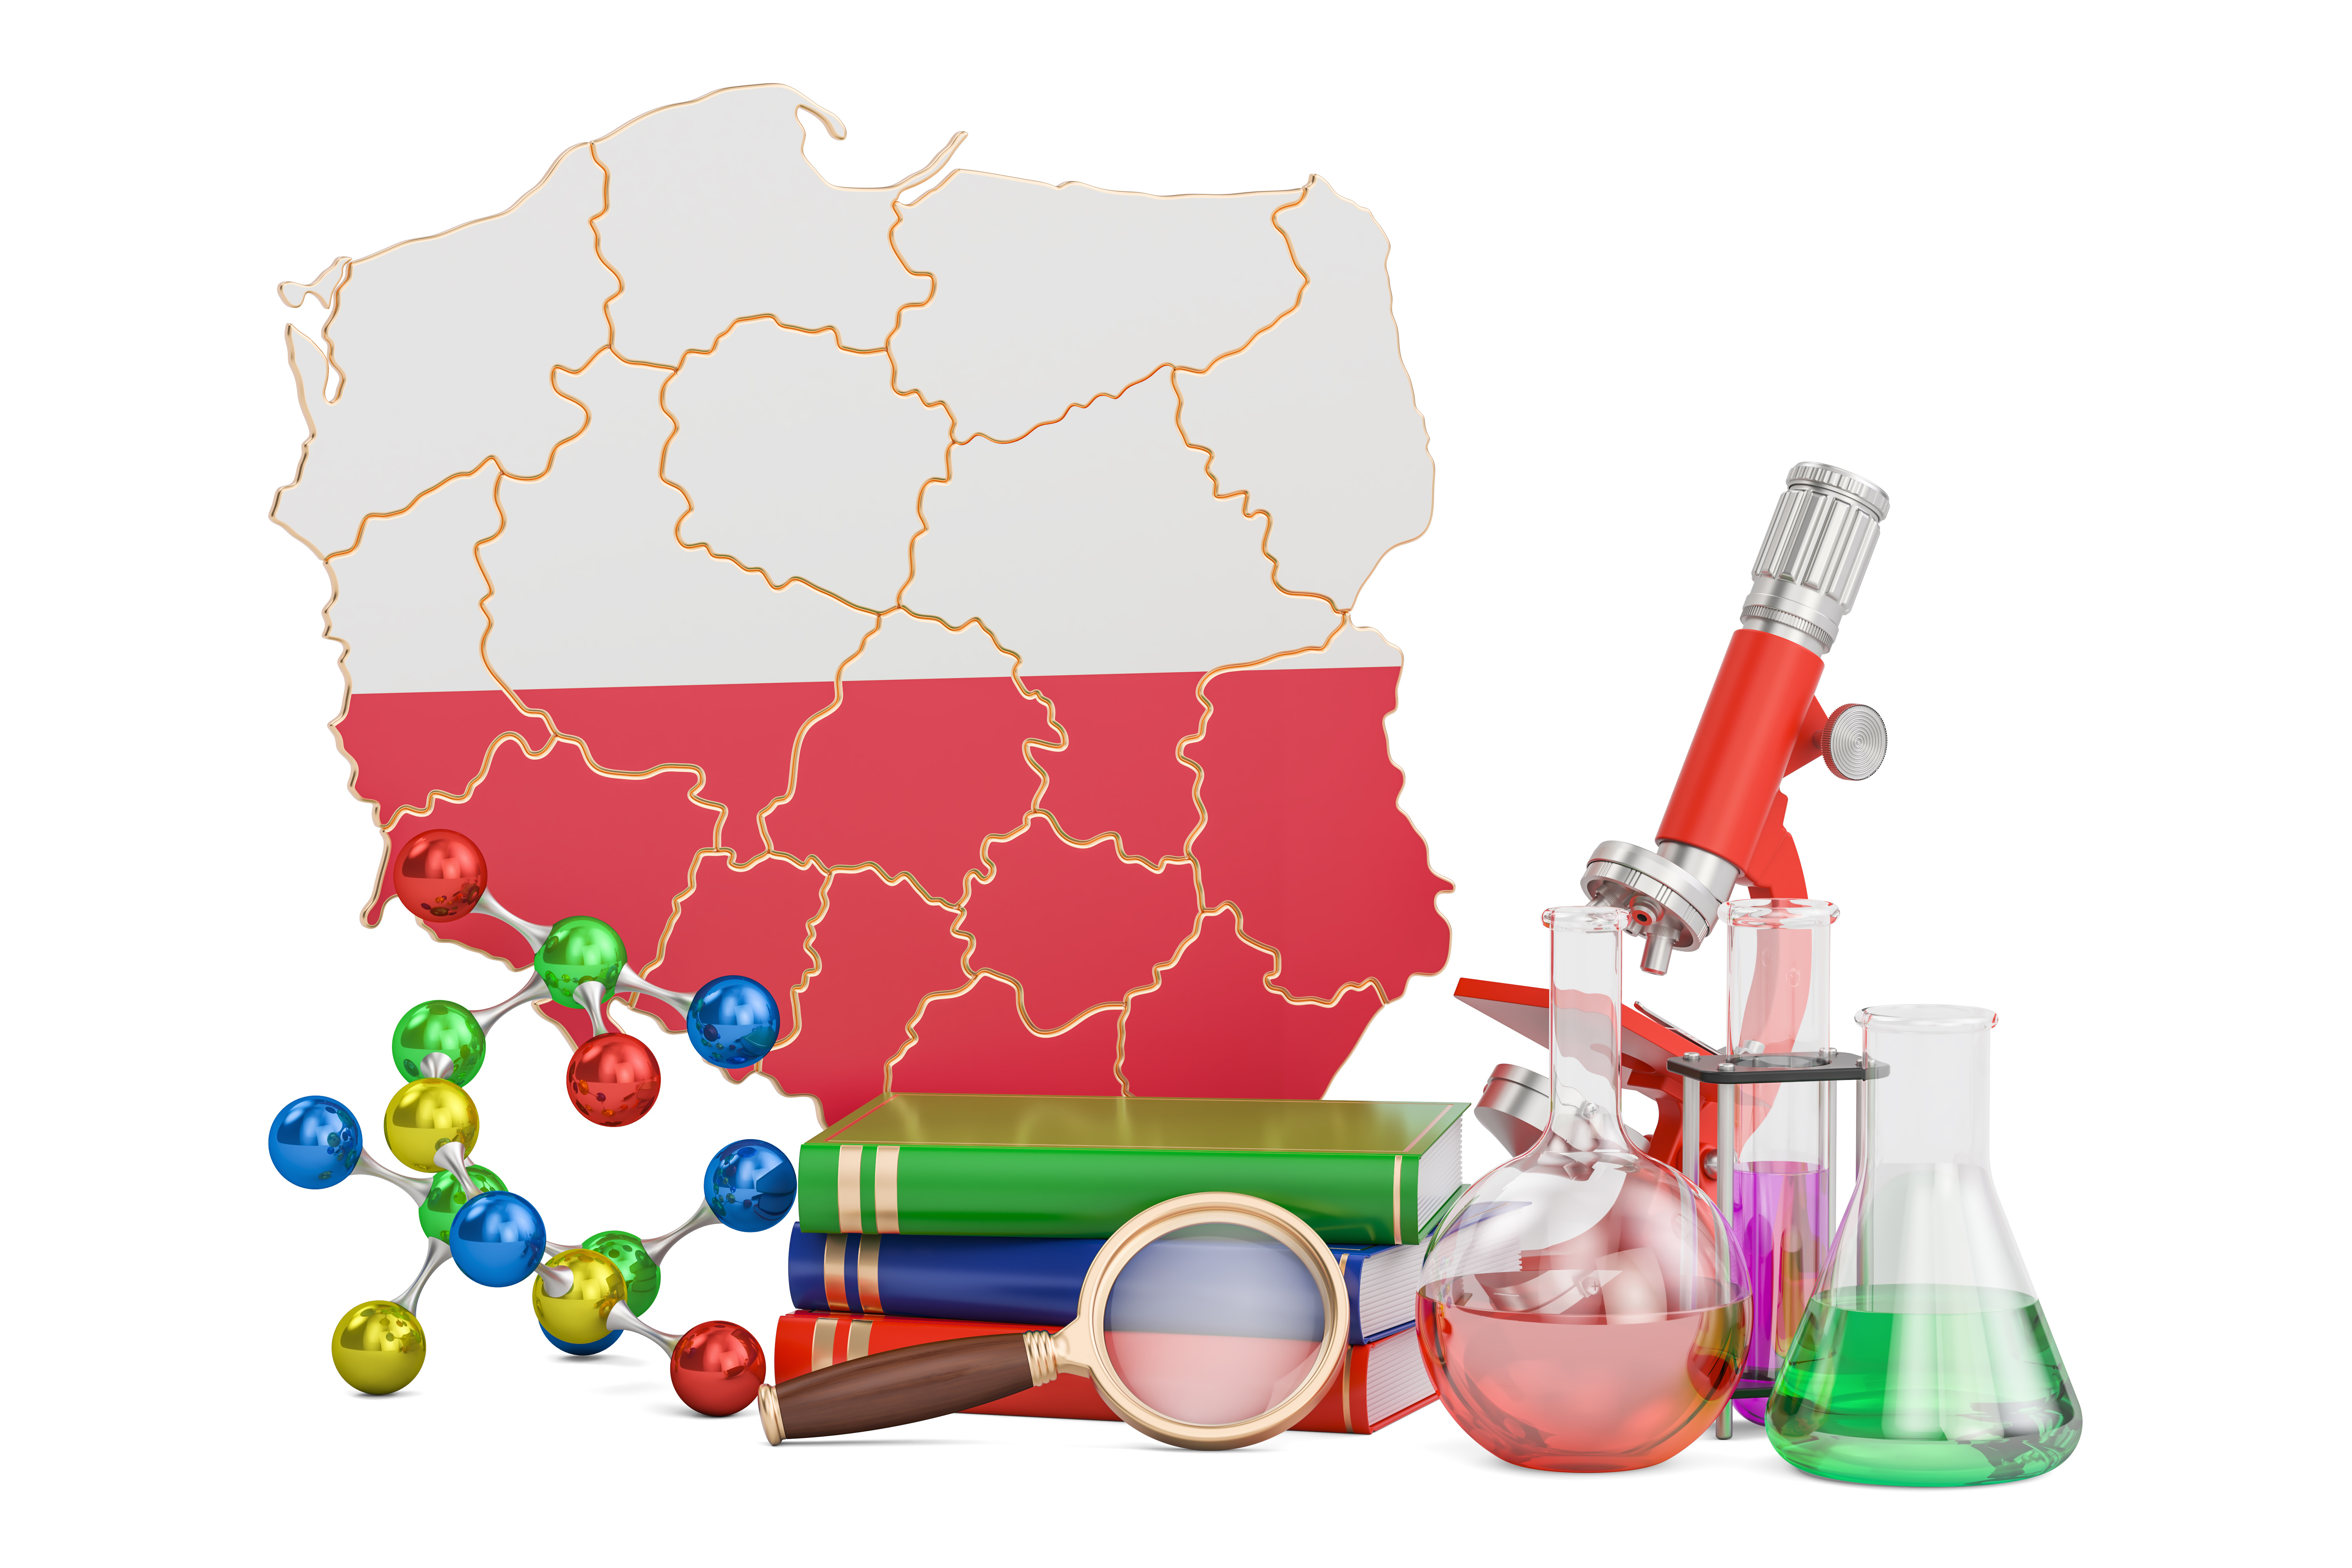 Mapa polski, lupa, książki, przyrządy chemiczne